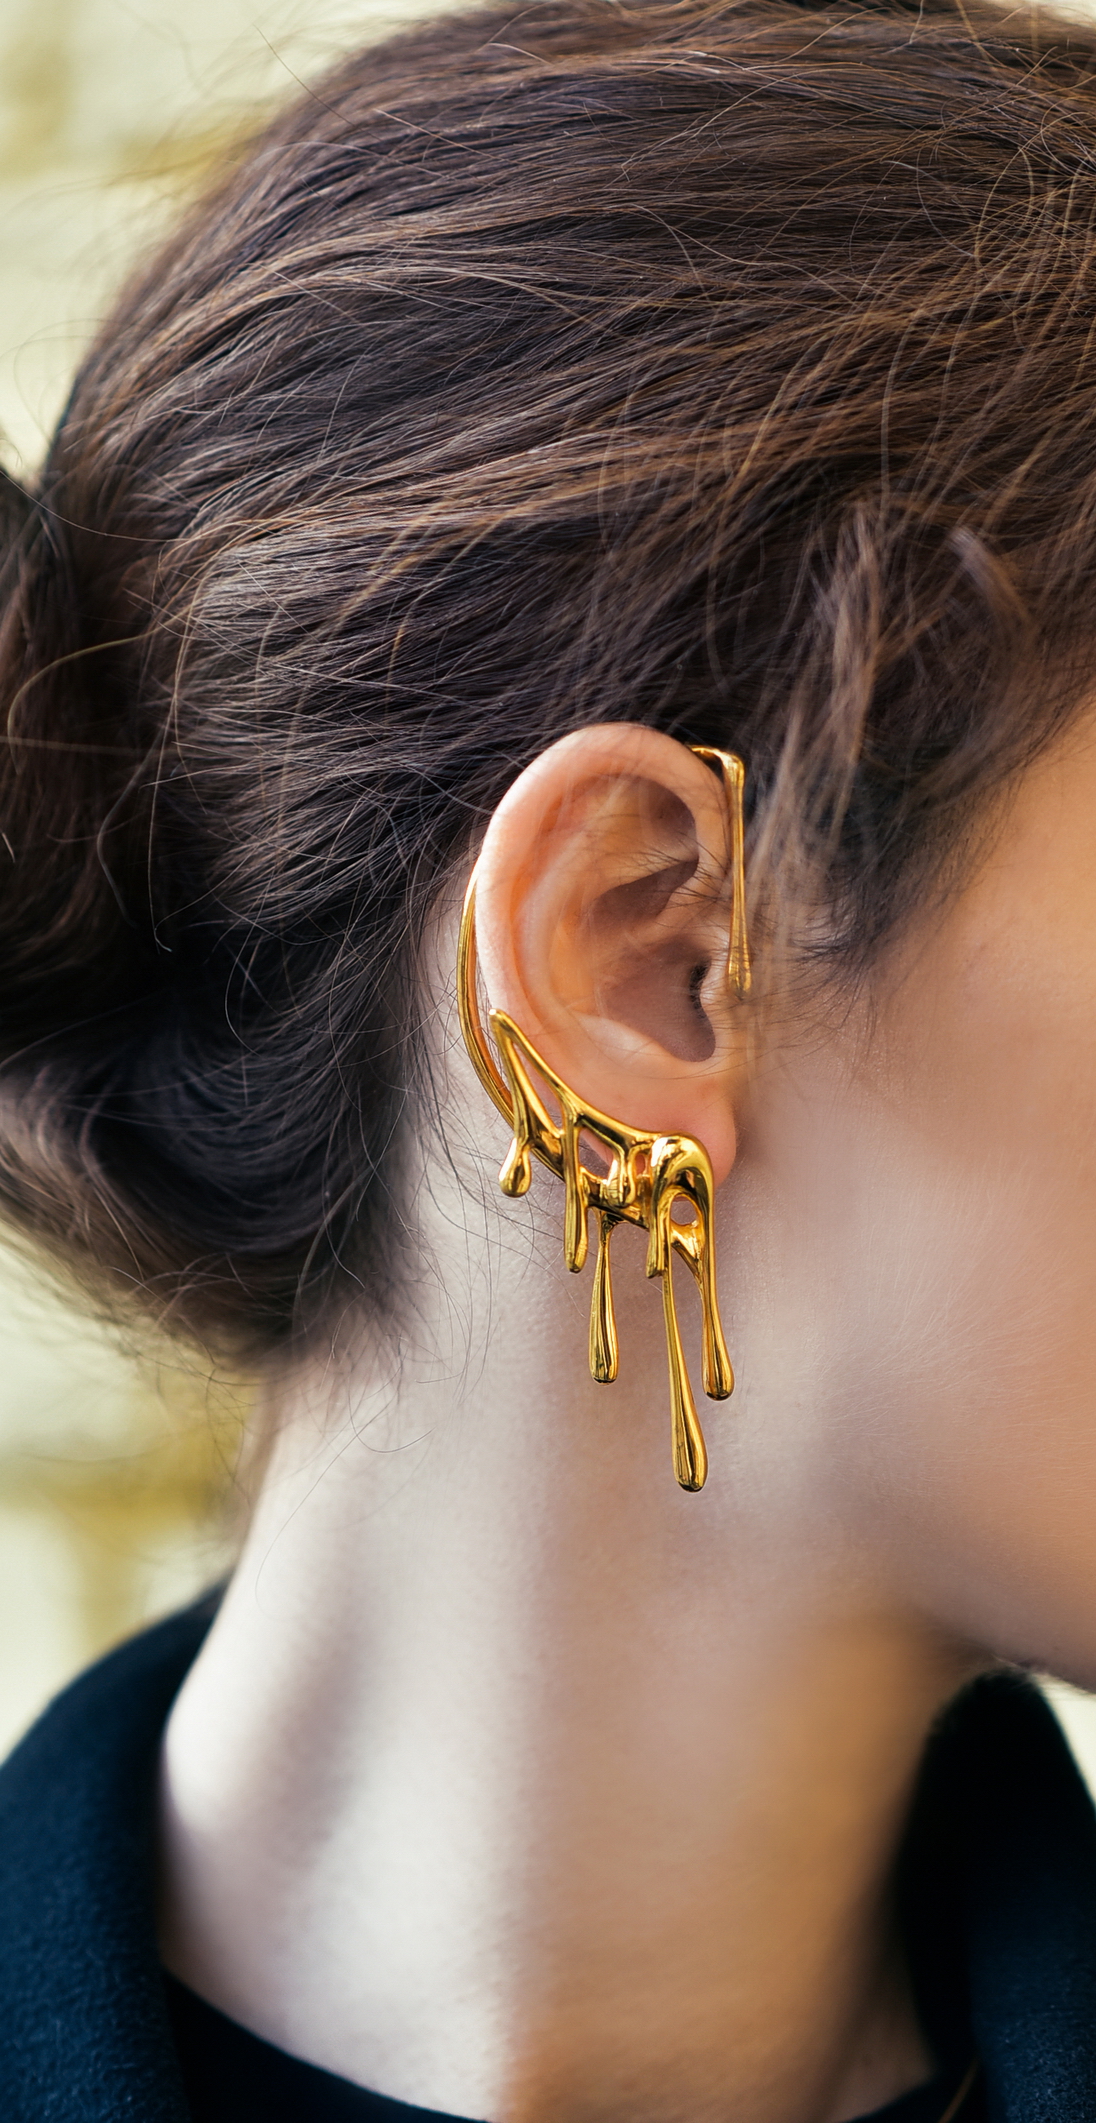 Gold Bali Ear Cuff - Orne Jewels - 2870489-sgquangbinhtourist.com.vn